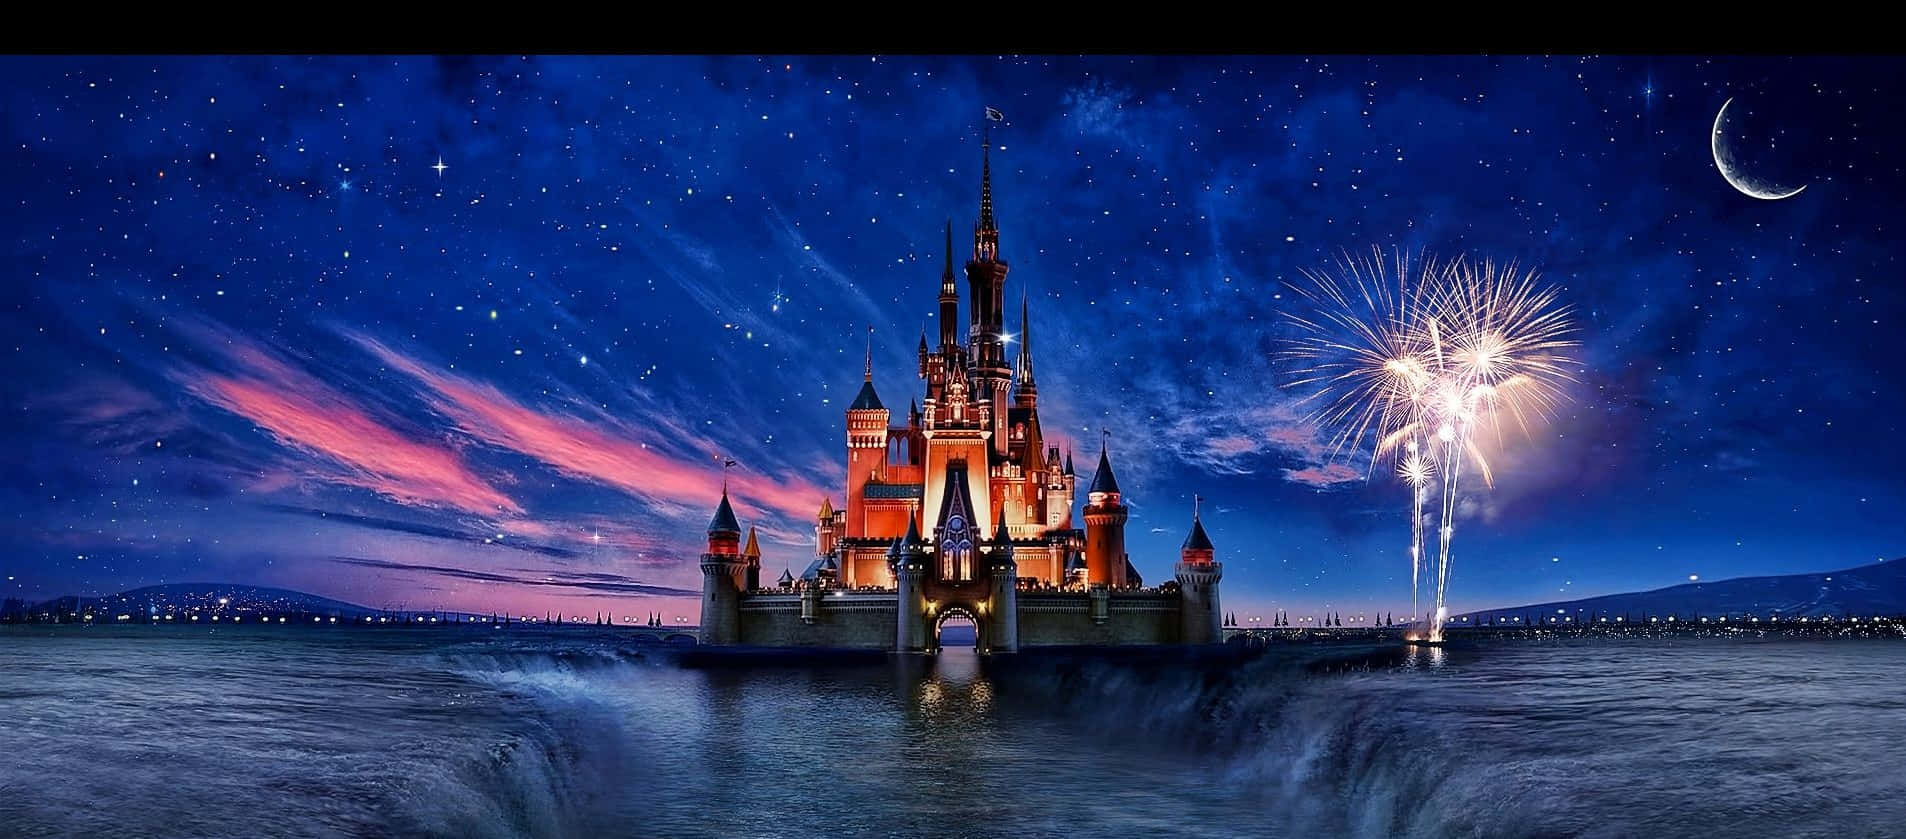 Sumérgeteen La Magia De Disneyland Con Una Vista Del Icónico Castillo.